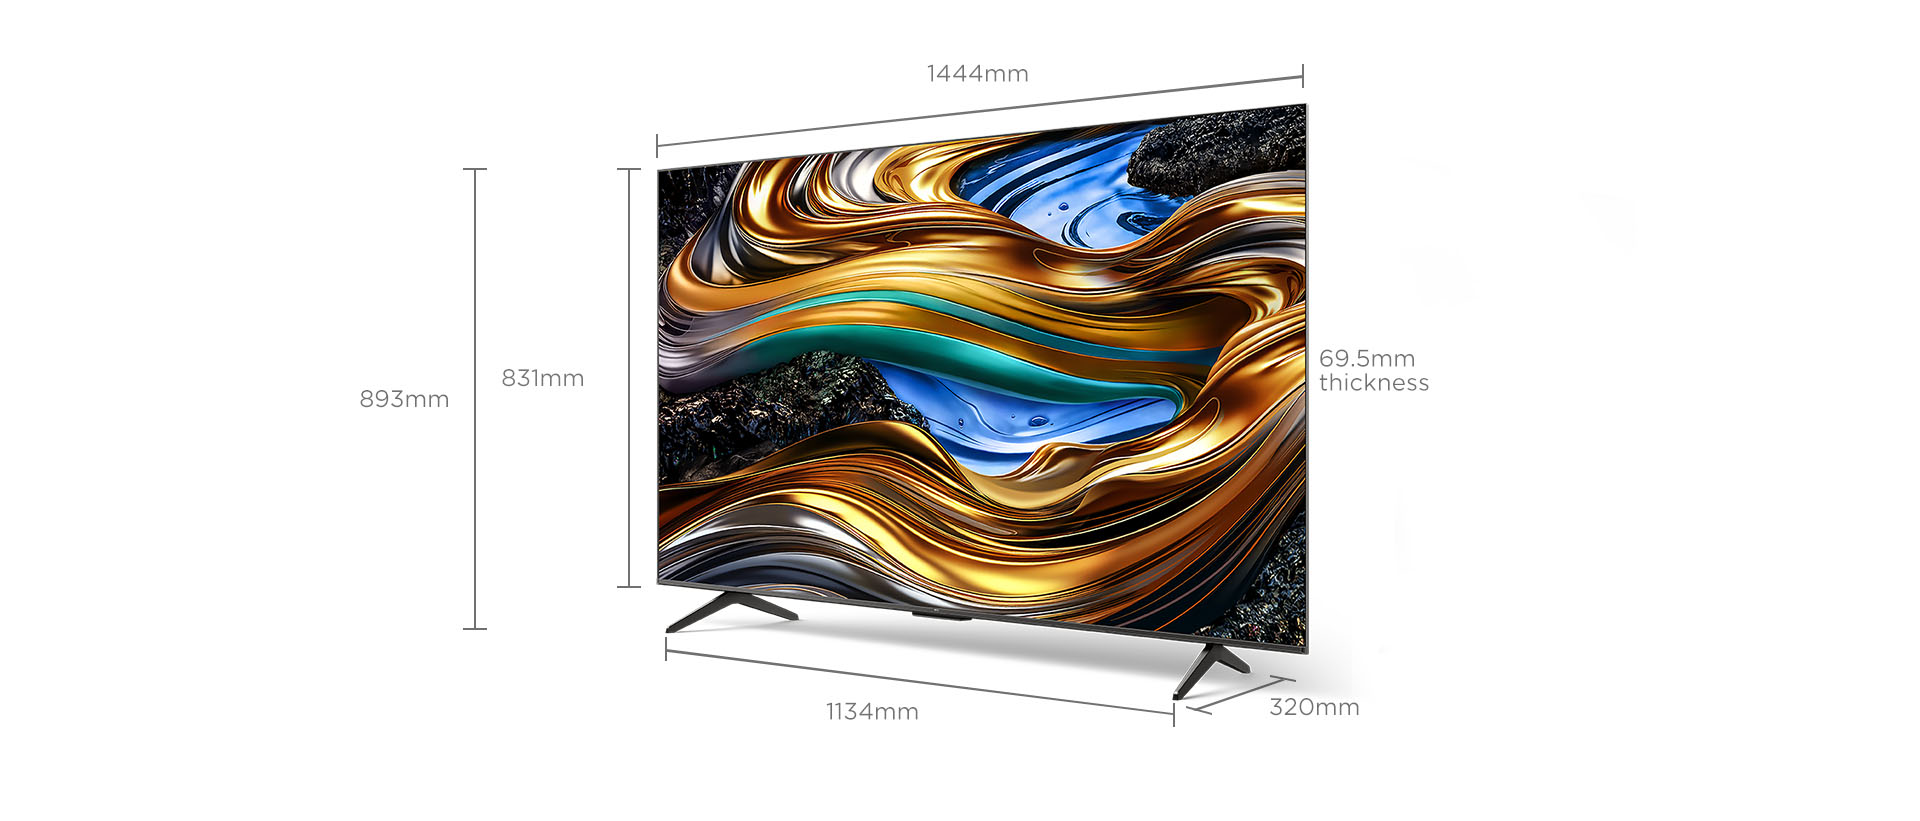 65 inch 南宫ng·28 P755 Smart TV